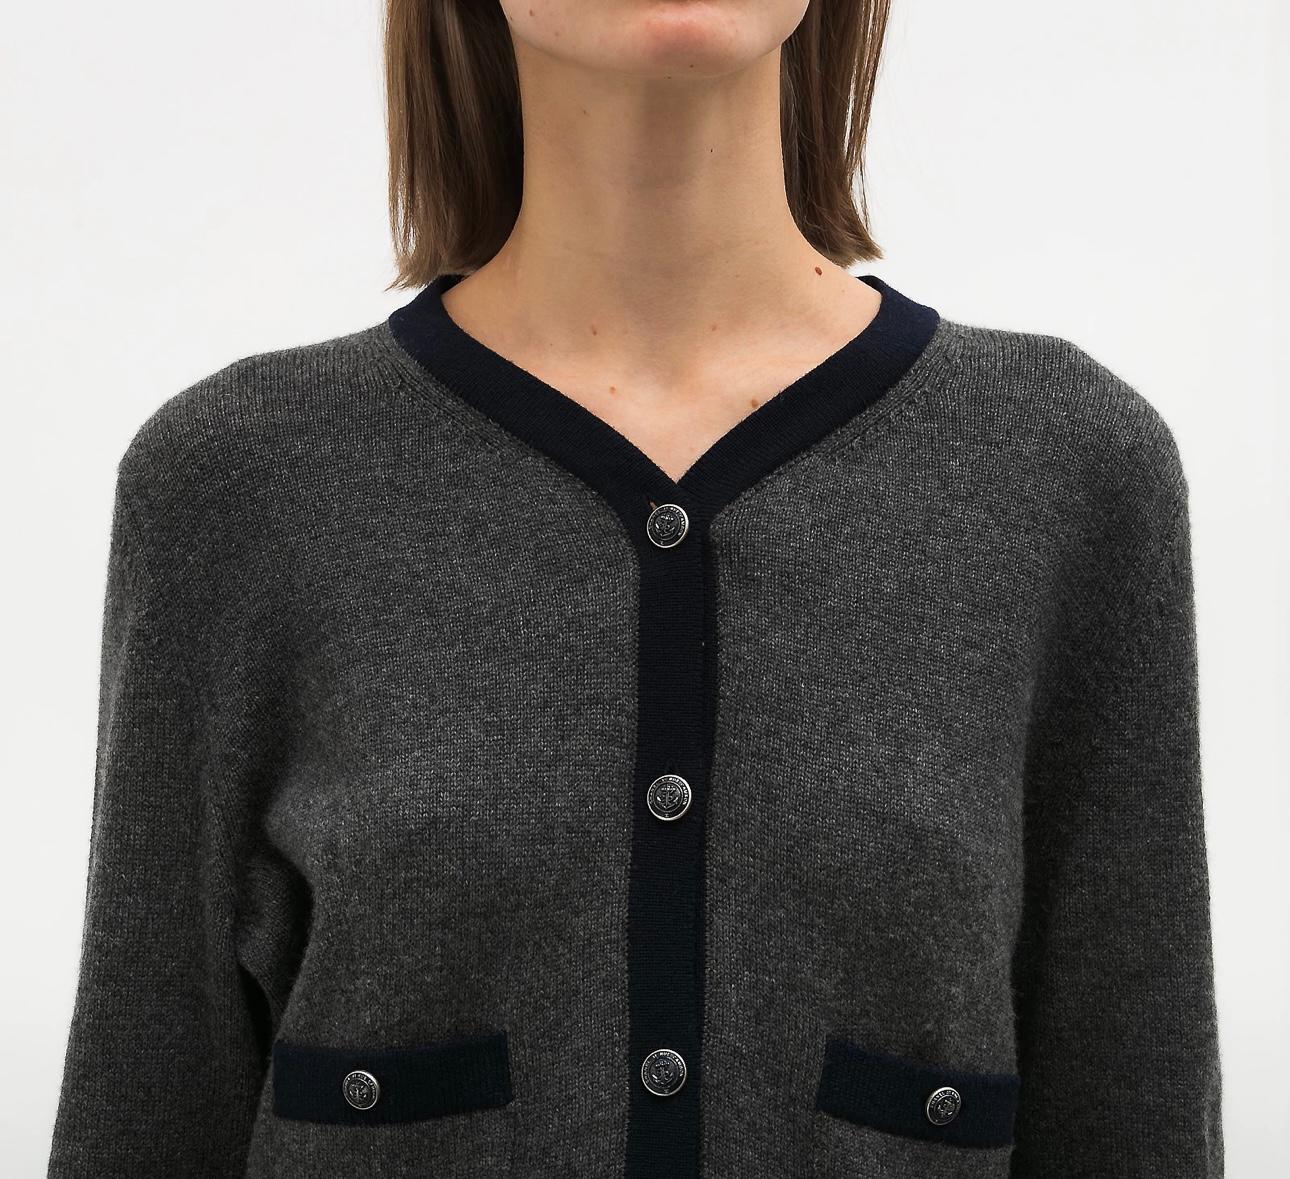 Chanel Iconic Sophie Coppola Style Cashmere Jacket 3